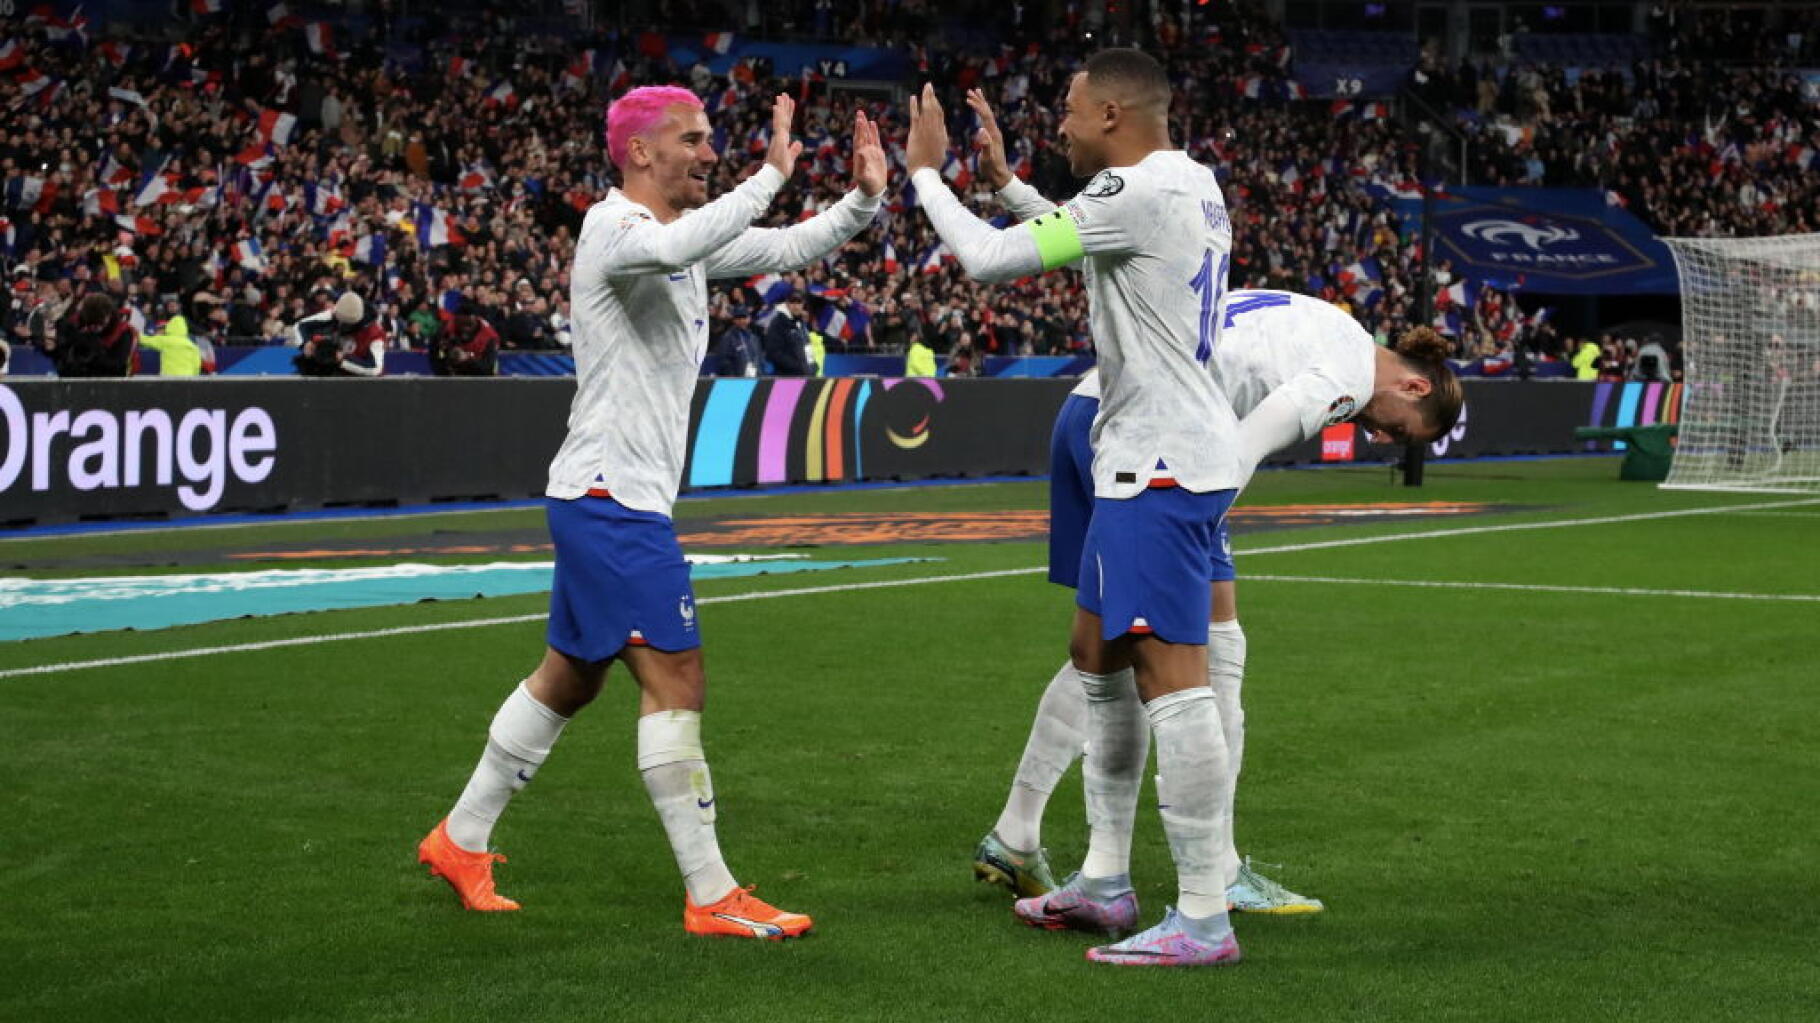 Le résumé de la balade bleue et les buts du duo Mbappé-Griezmann lors de France-Pays-Bas